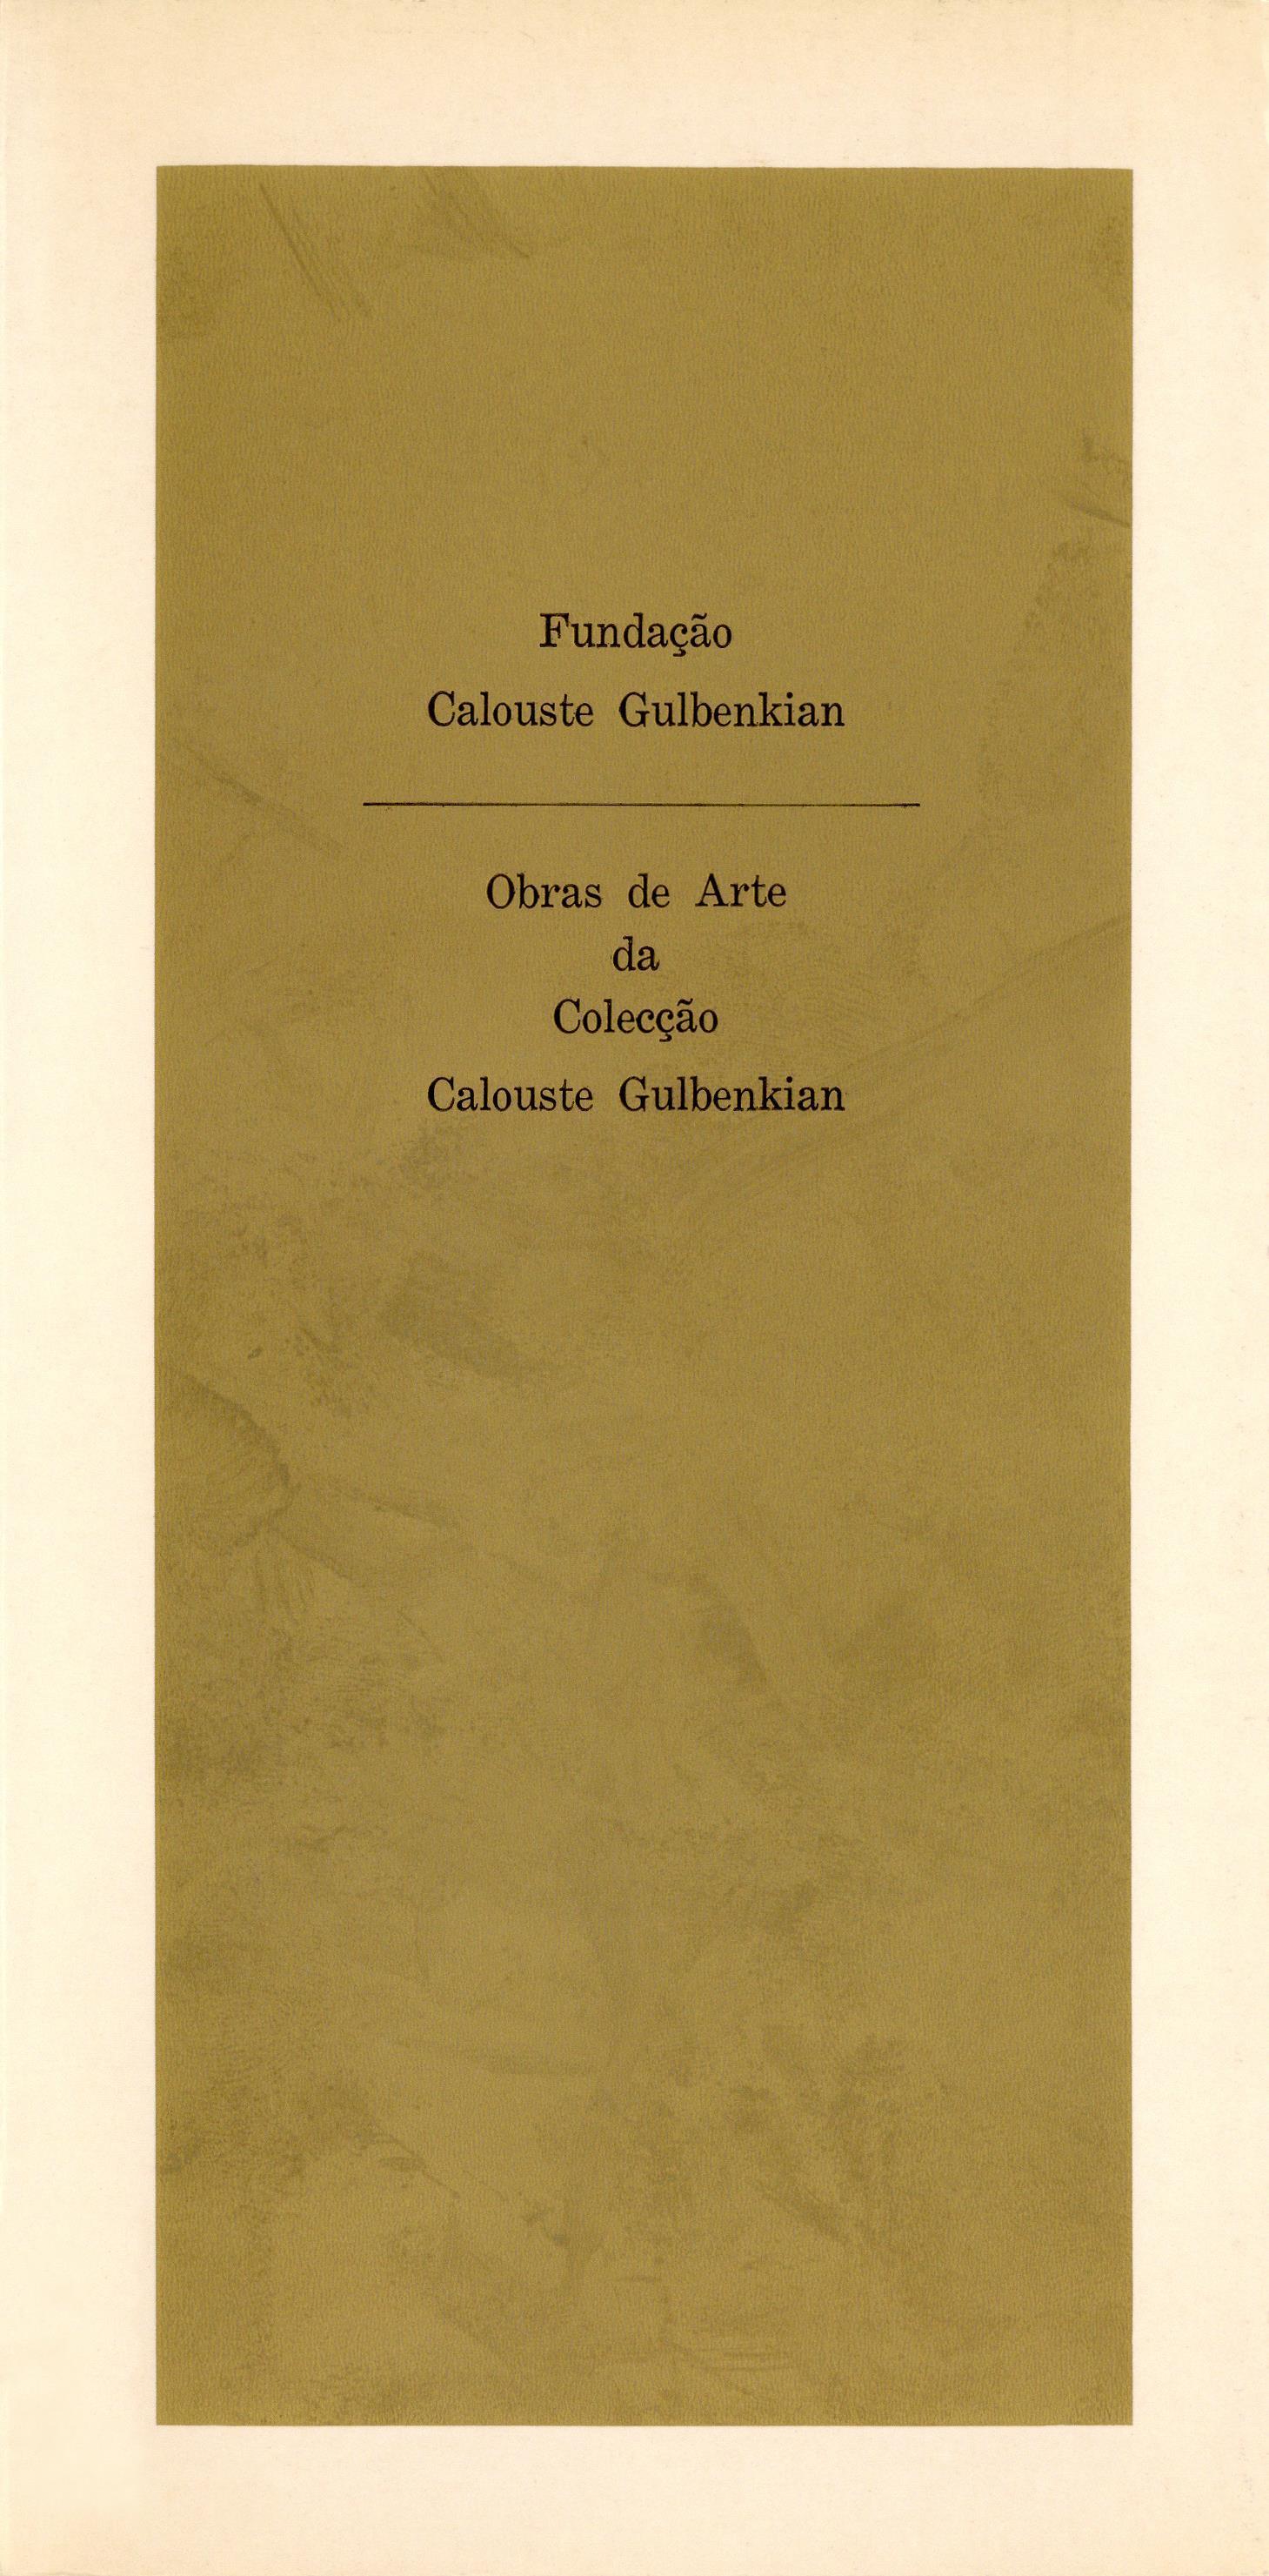 Obras de Arte da Colecção Calouste Gulbenkian